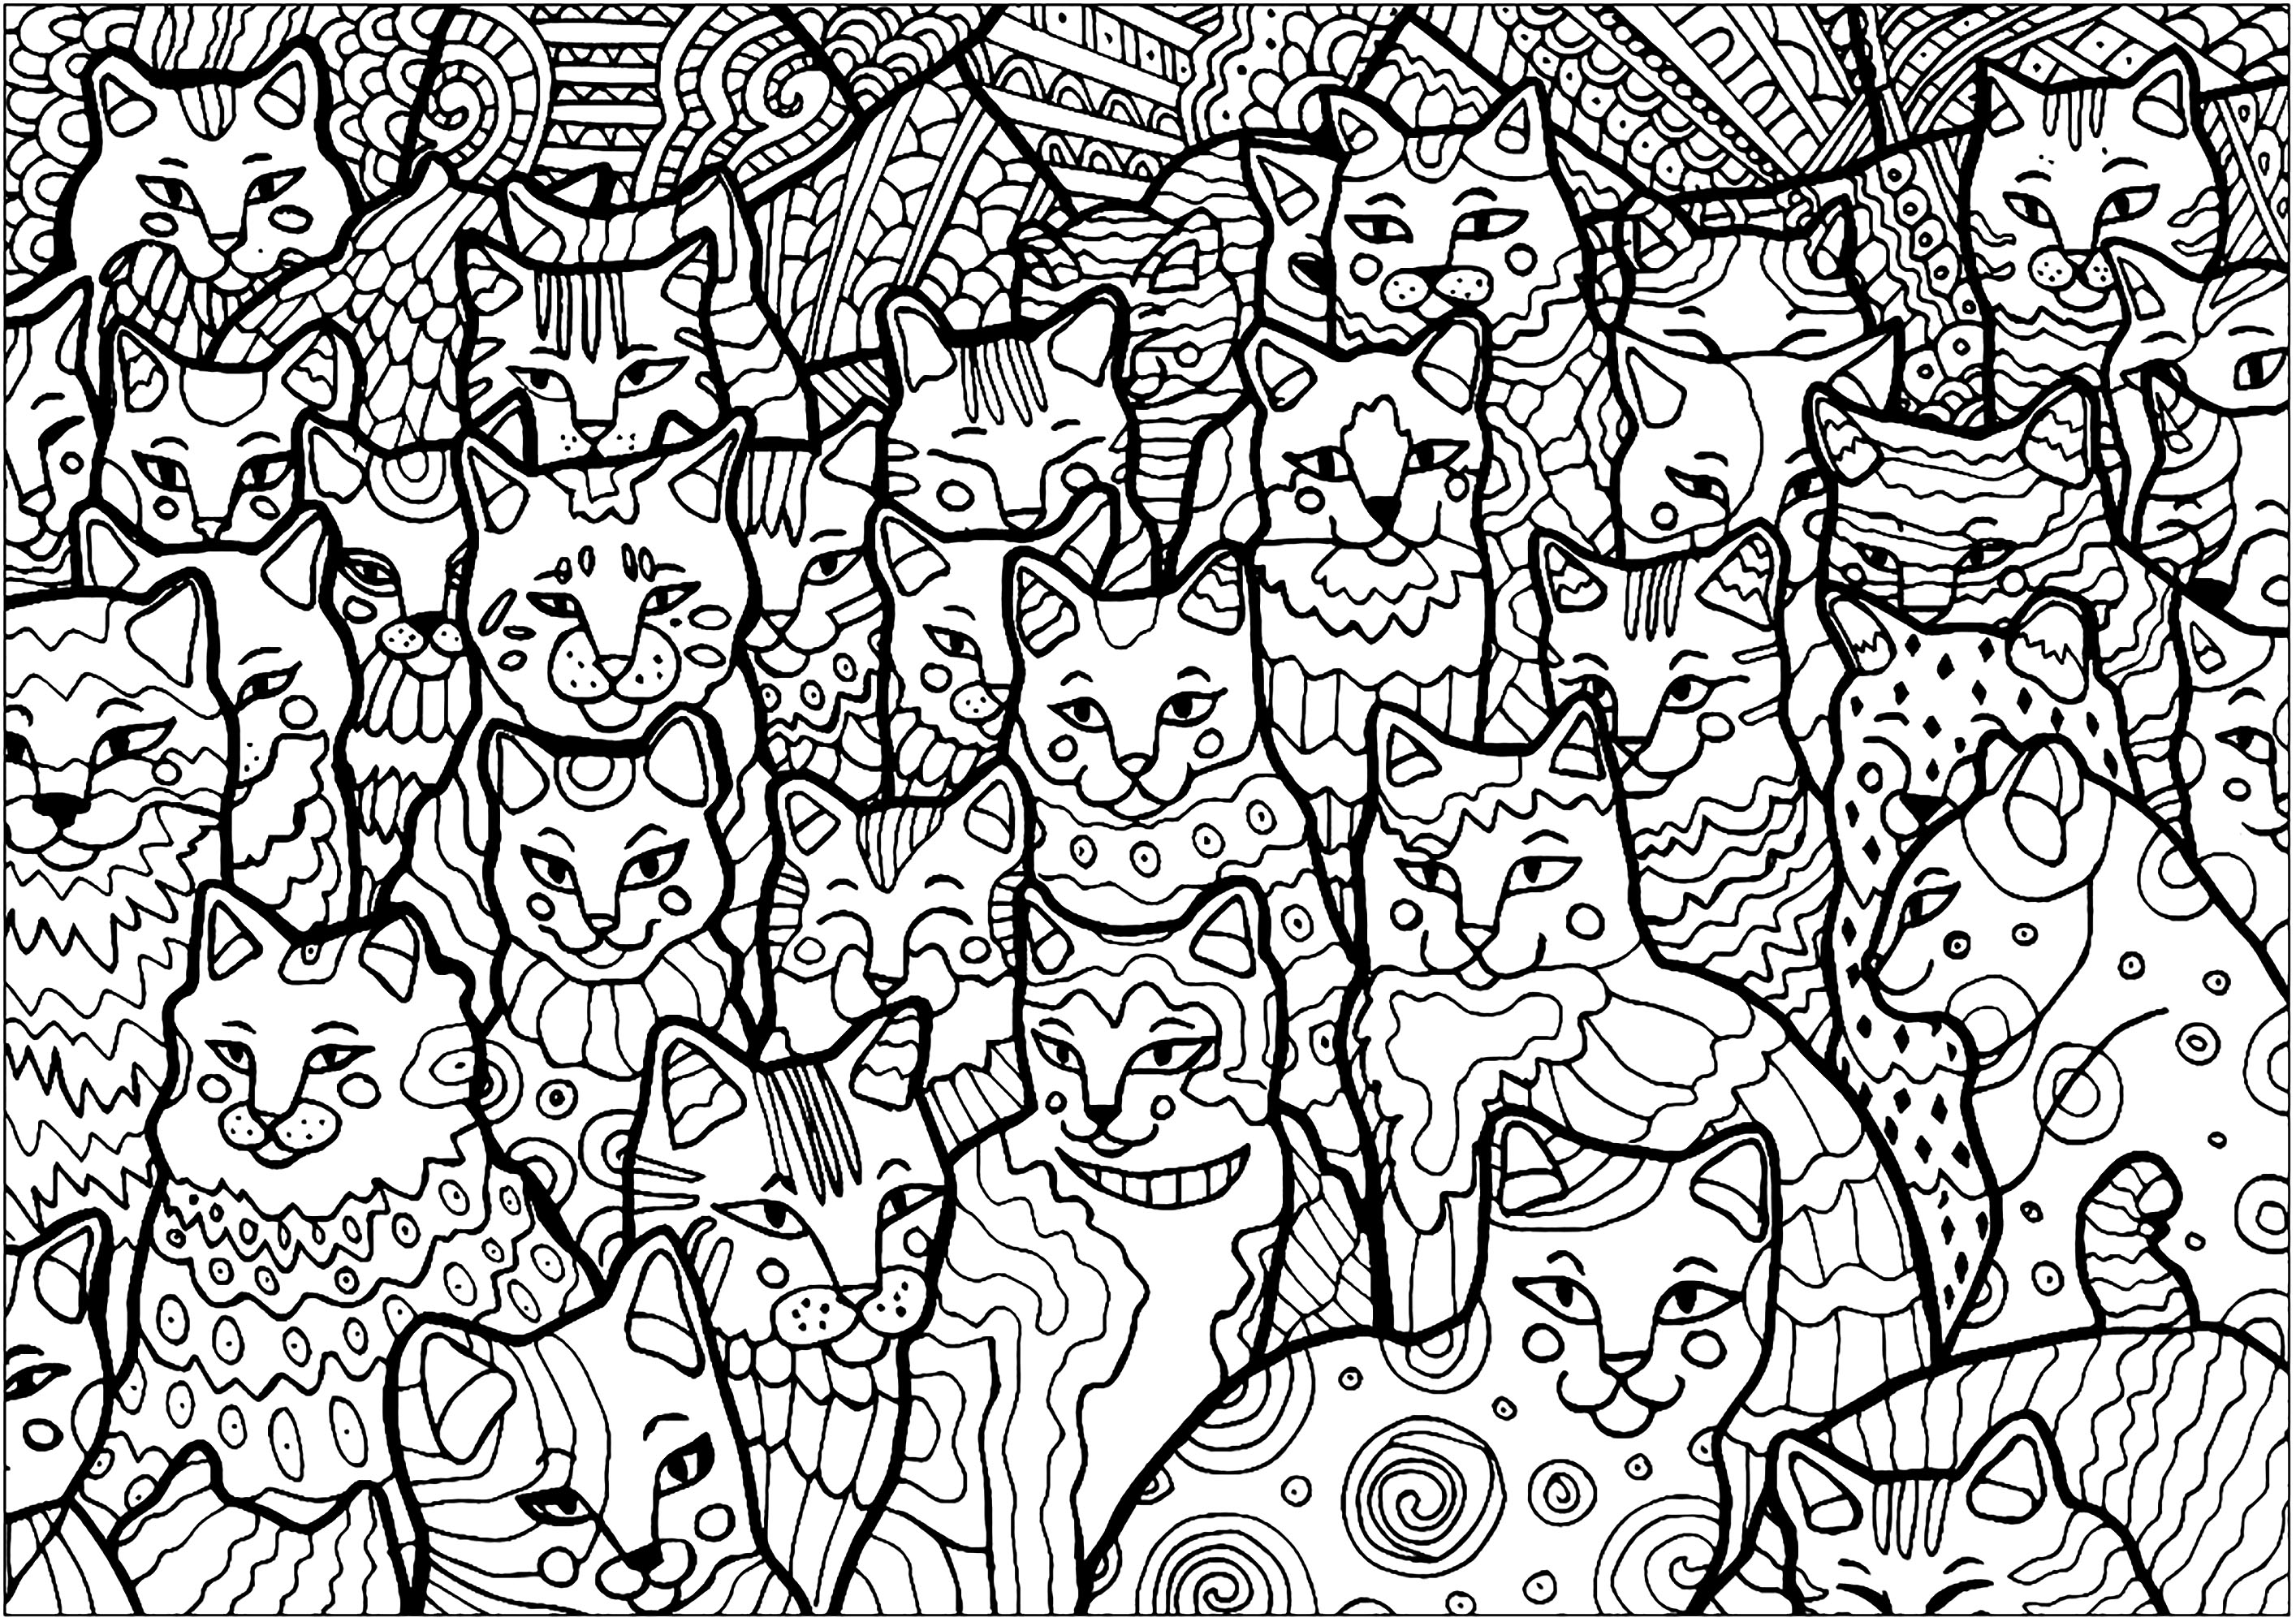 Questi gatti occupano l'intera pagina, sta a voi colorarli!. Una colorazione piuttosto complessa, ricca di dettagli... e di gatti!